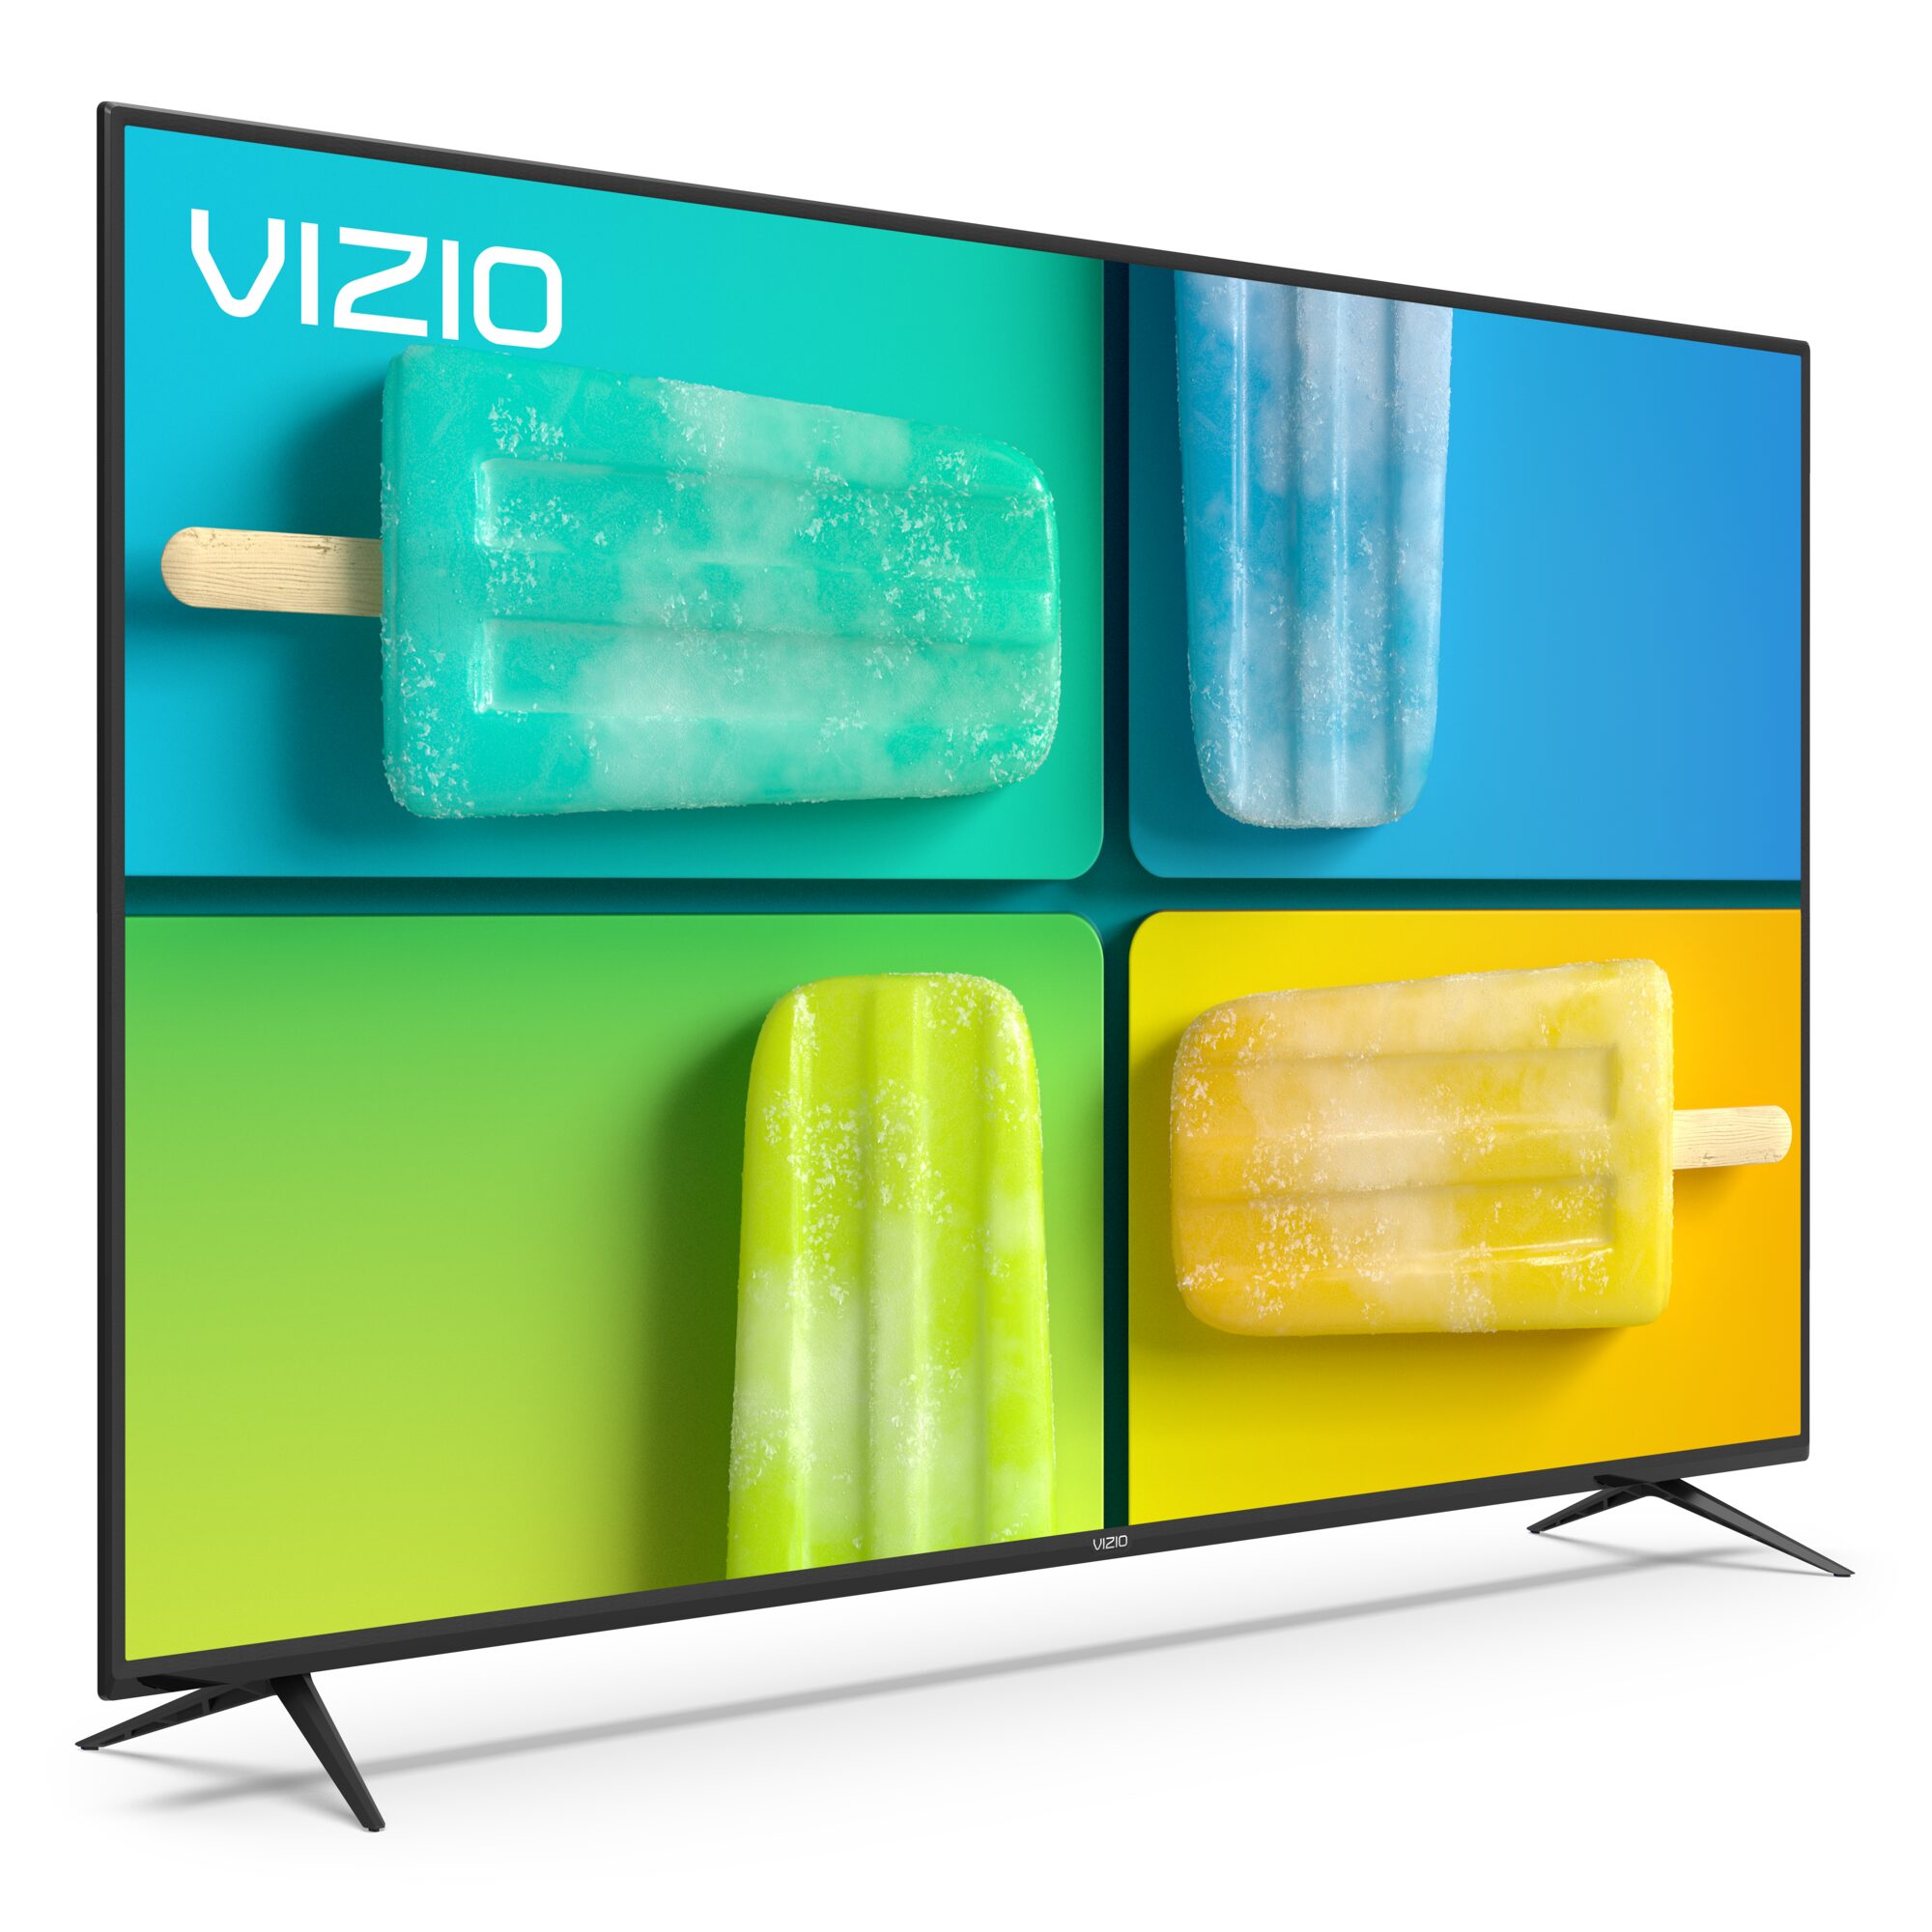 VIZIO 70" Class 4K UHD LED Smart TV HDR V-Series V705x-H1 - image 11 of 28